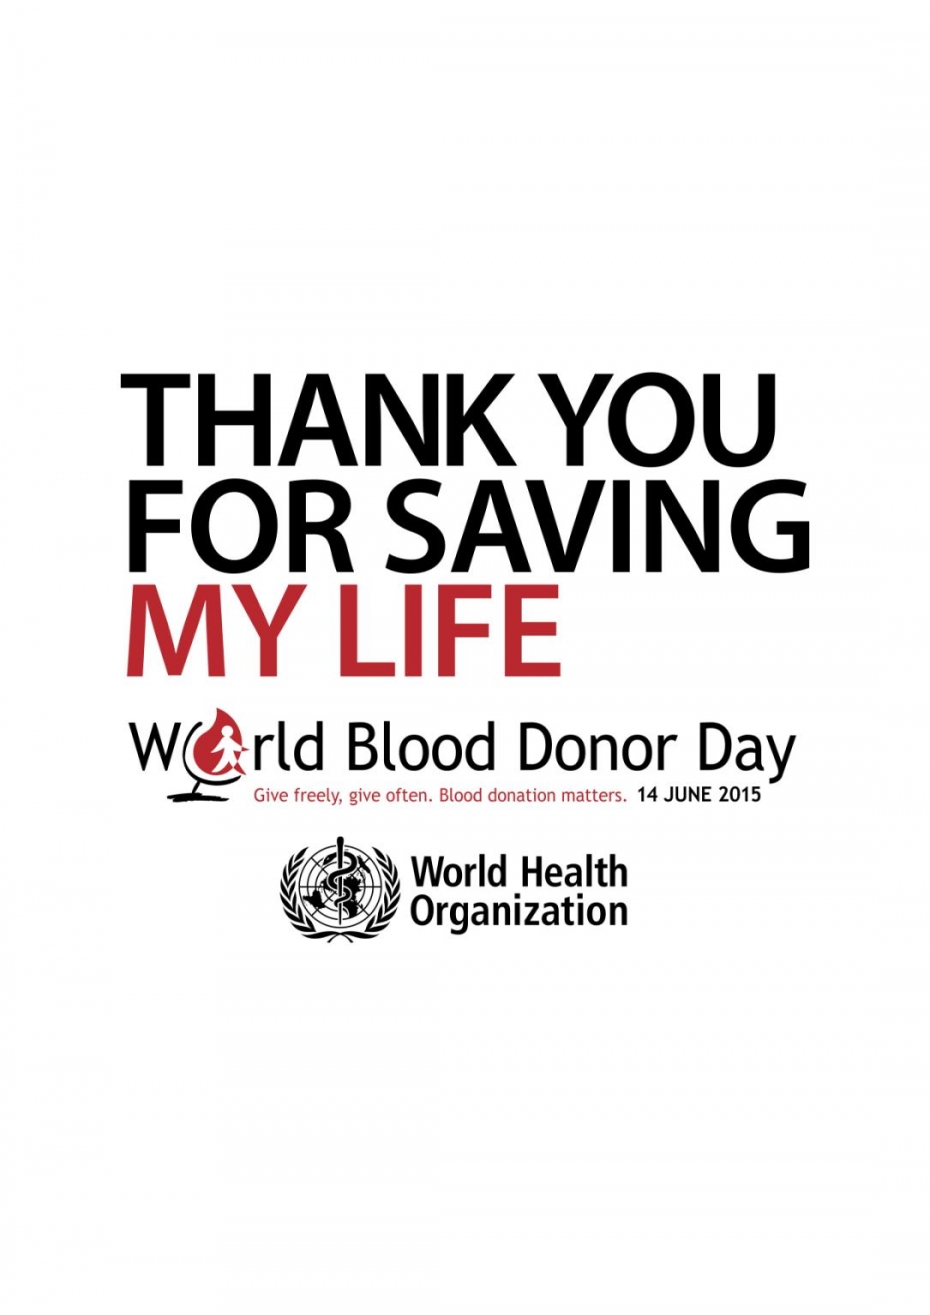  Παγκόσμια Ημέρα Εθελοντή Αιμοδότη 14.06.2015 με θέμα «Σας ευχαριστώ για τη διάσωση της ζωής μου» (Thank you for saving my life )